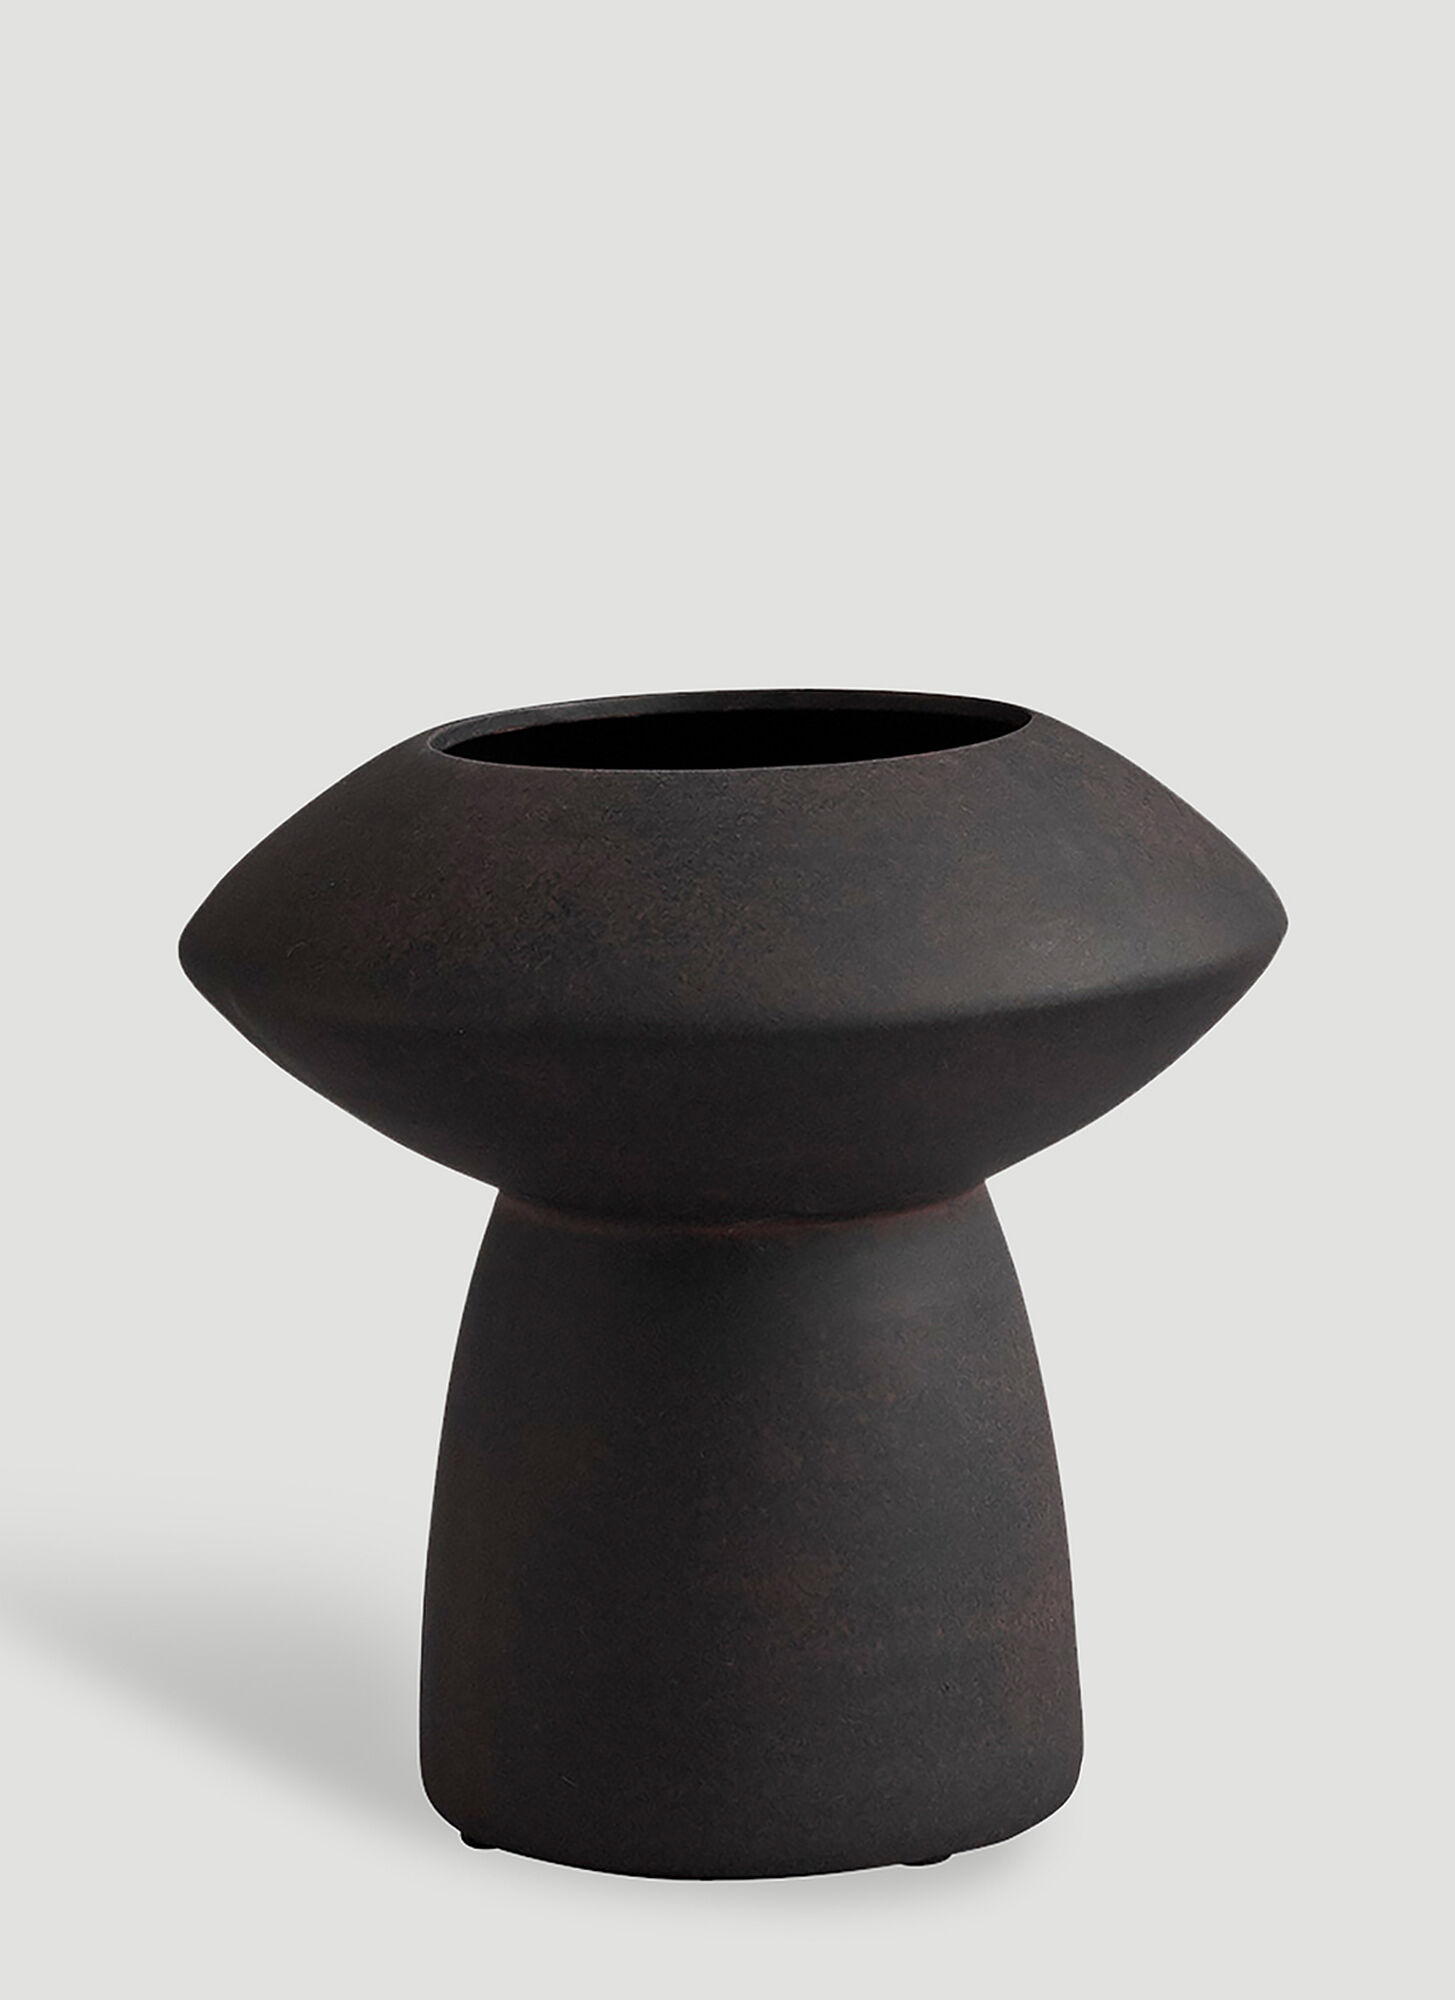 101 Copenhagen Sphere Fat Vase In Brown